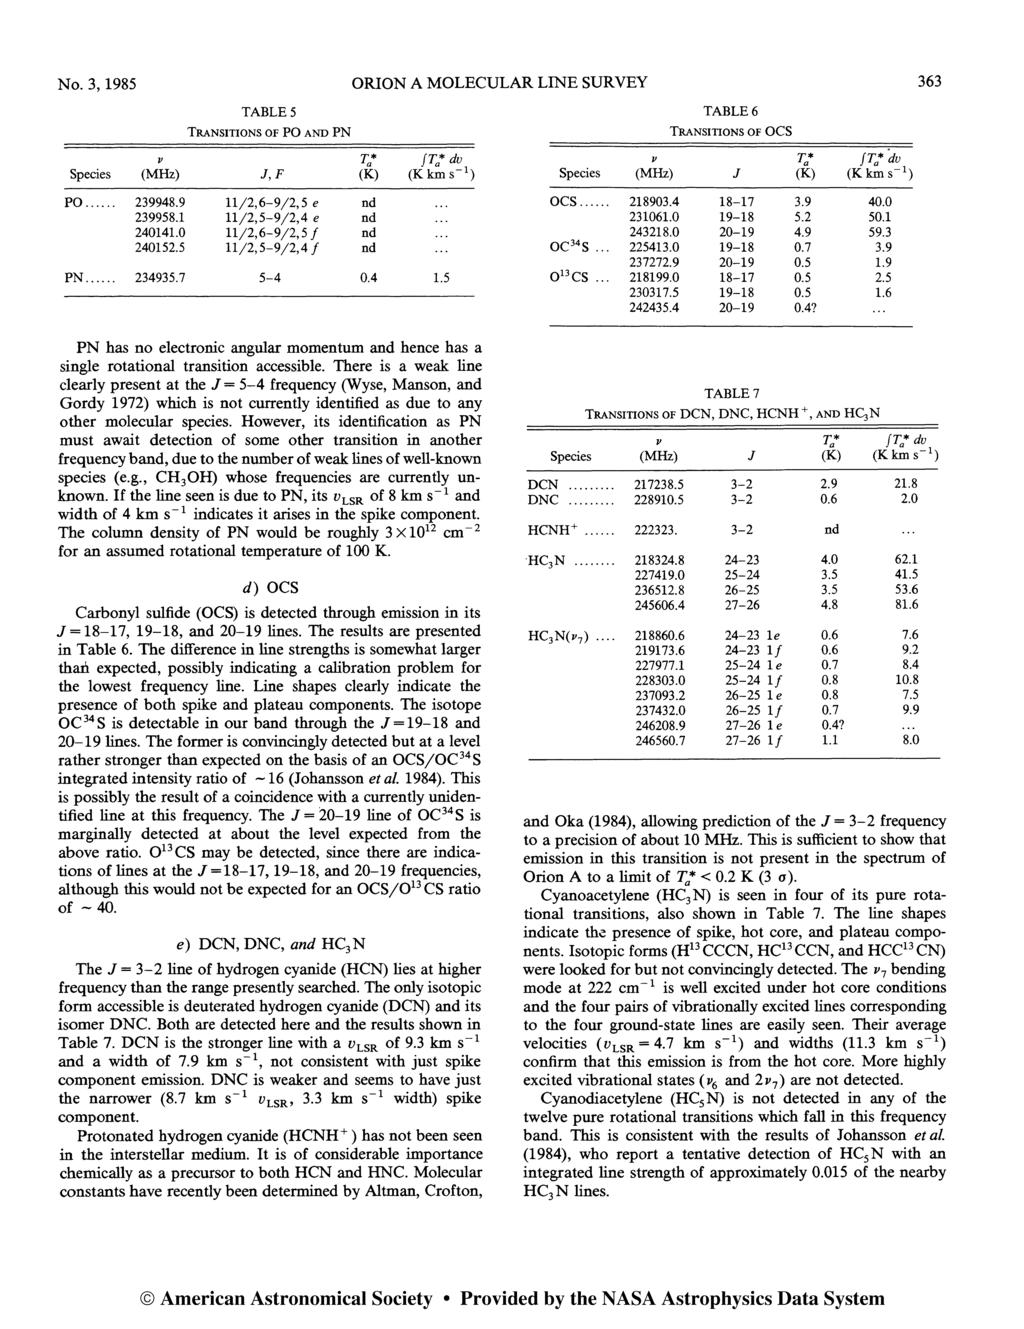 No.3, 1985 ORON A MOLECULAR LNE SURVEY 363 TABLES 'TRANSTONS OF PO AND PN v T* a fta* dv Species (MHz) J,F (K) (Kkm s- 1 ) PO... 239948.9 11/2,6-9/2,5 e nd 239958.1 11/2,5-9/2,4 e nd 24141.